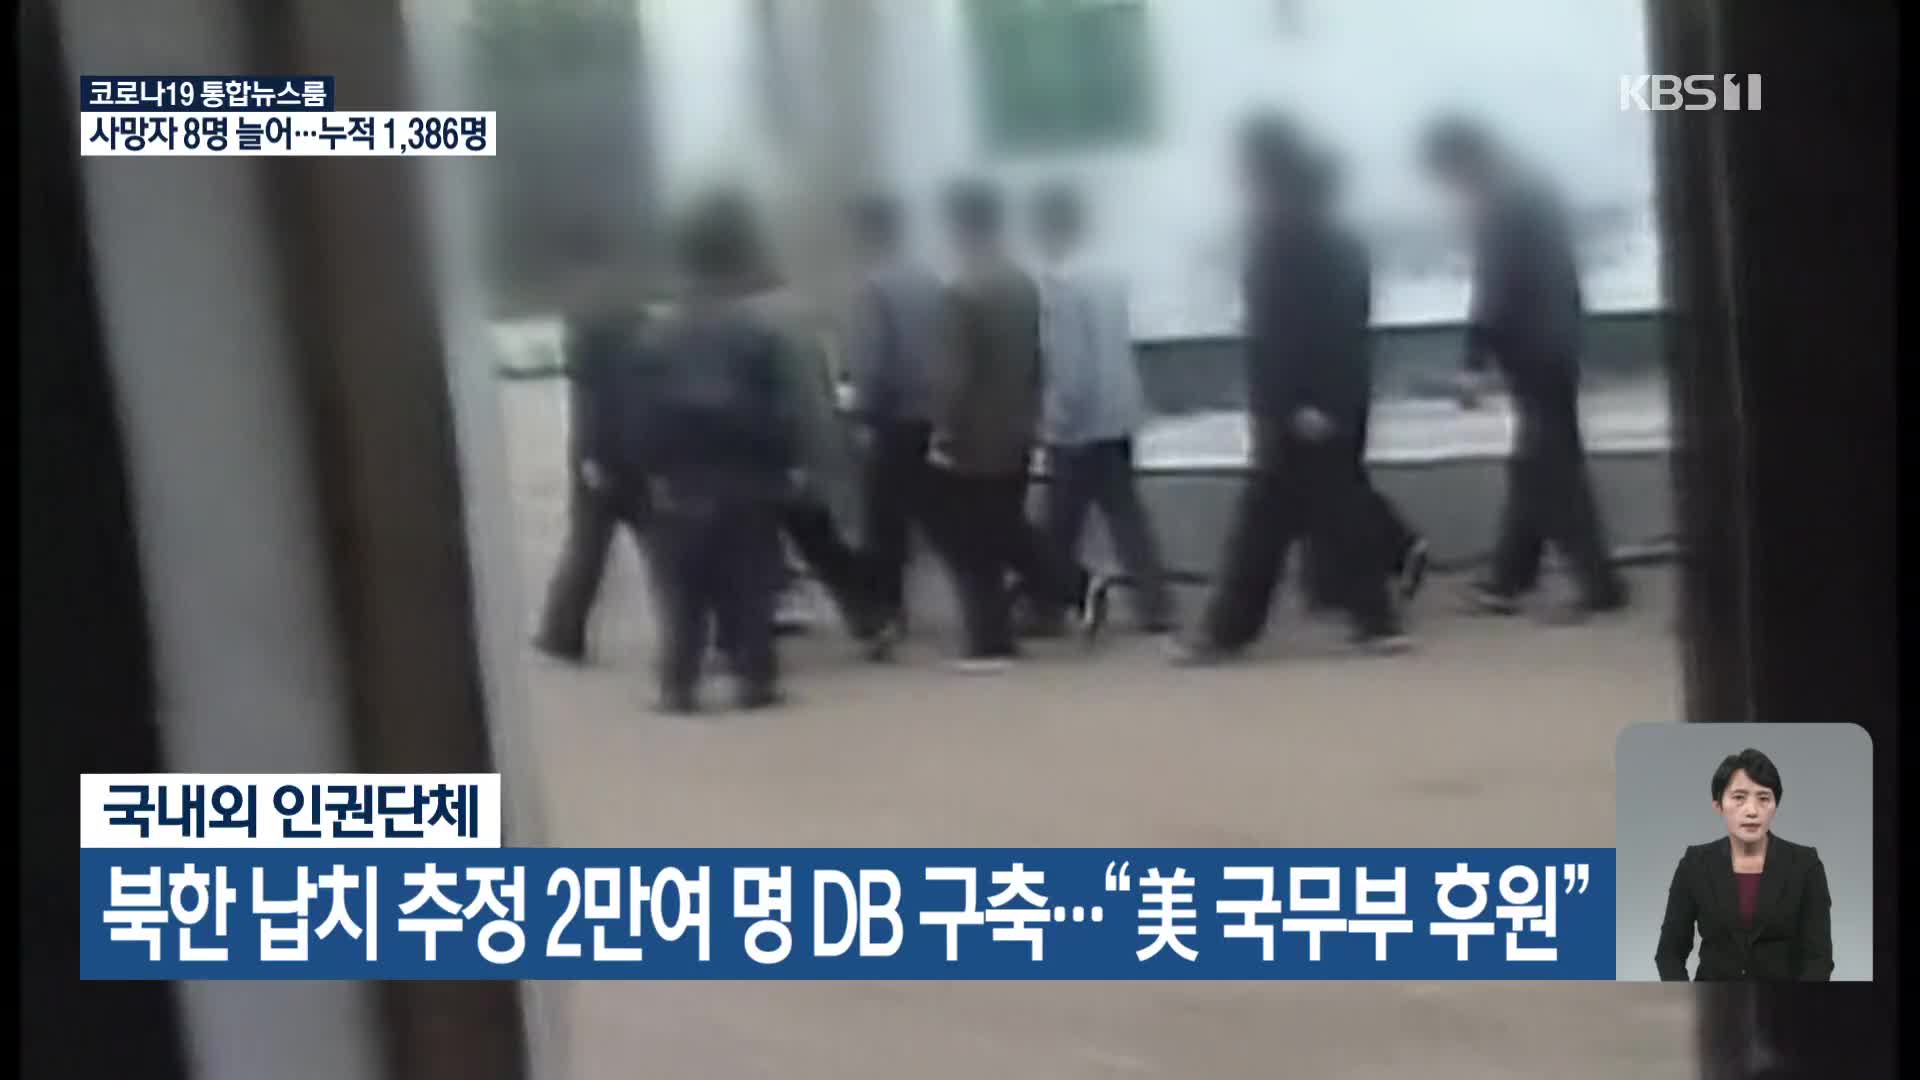 북한 납치 추정 2만여 명 DB 구축…“美 국무부 후원”